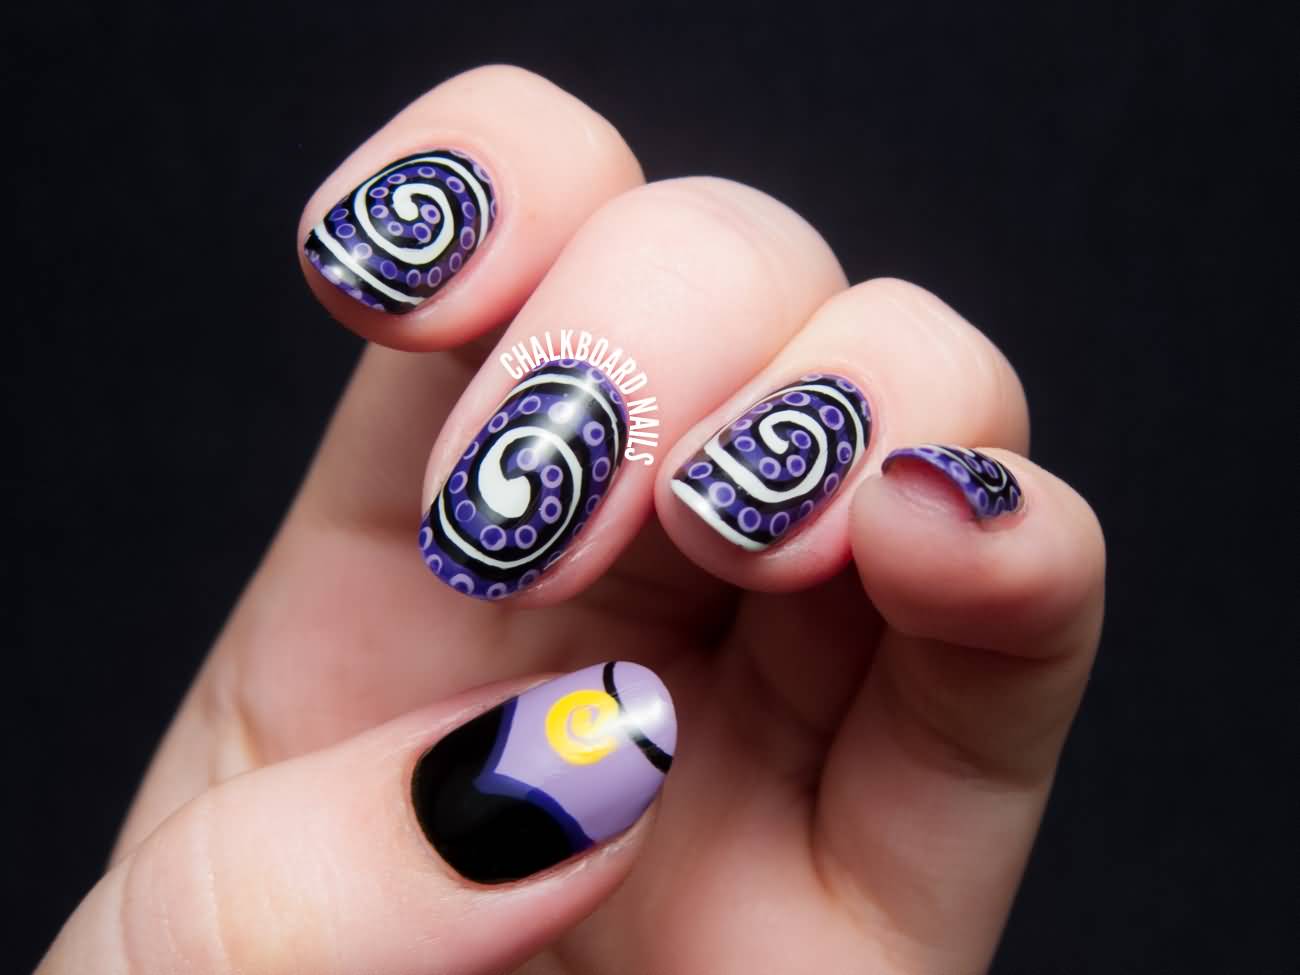 Purple Polka Dots And White Spiral Design Nail Art